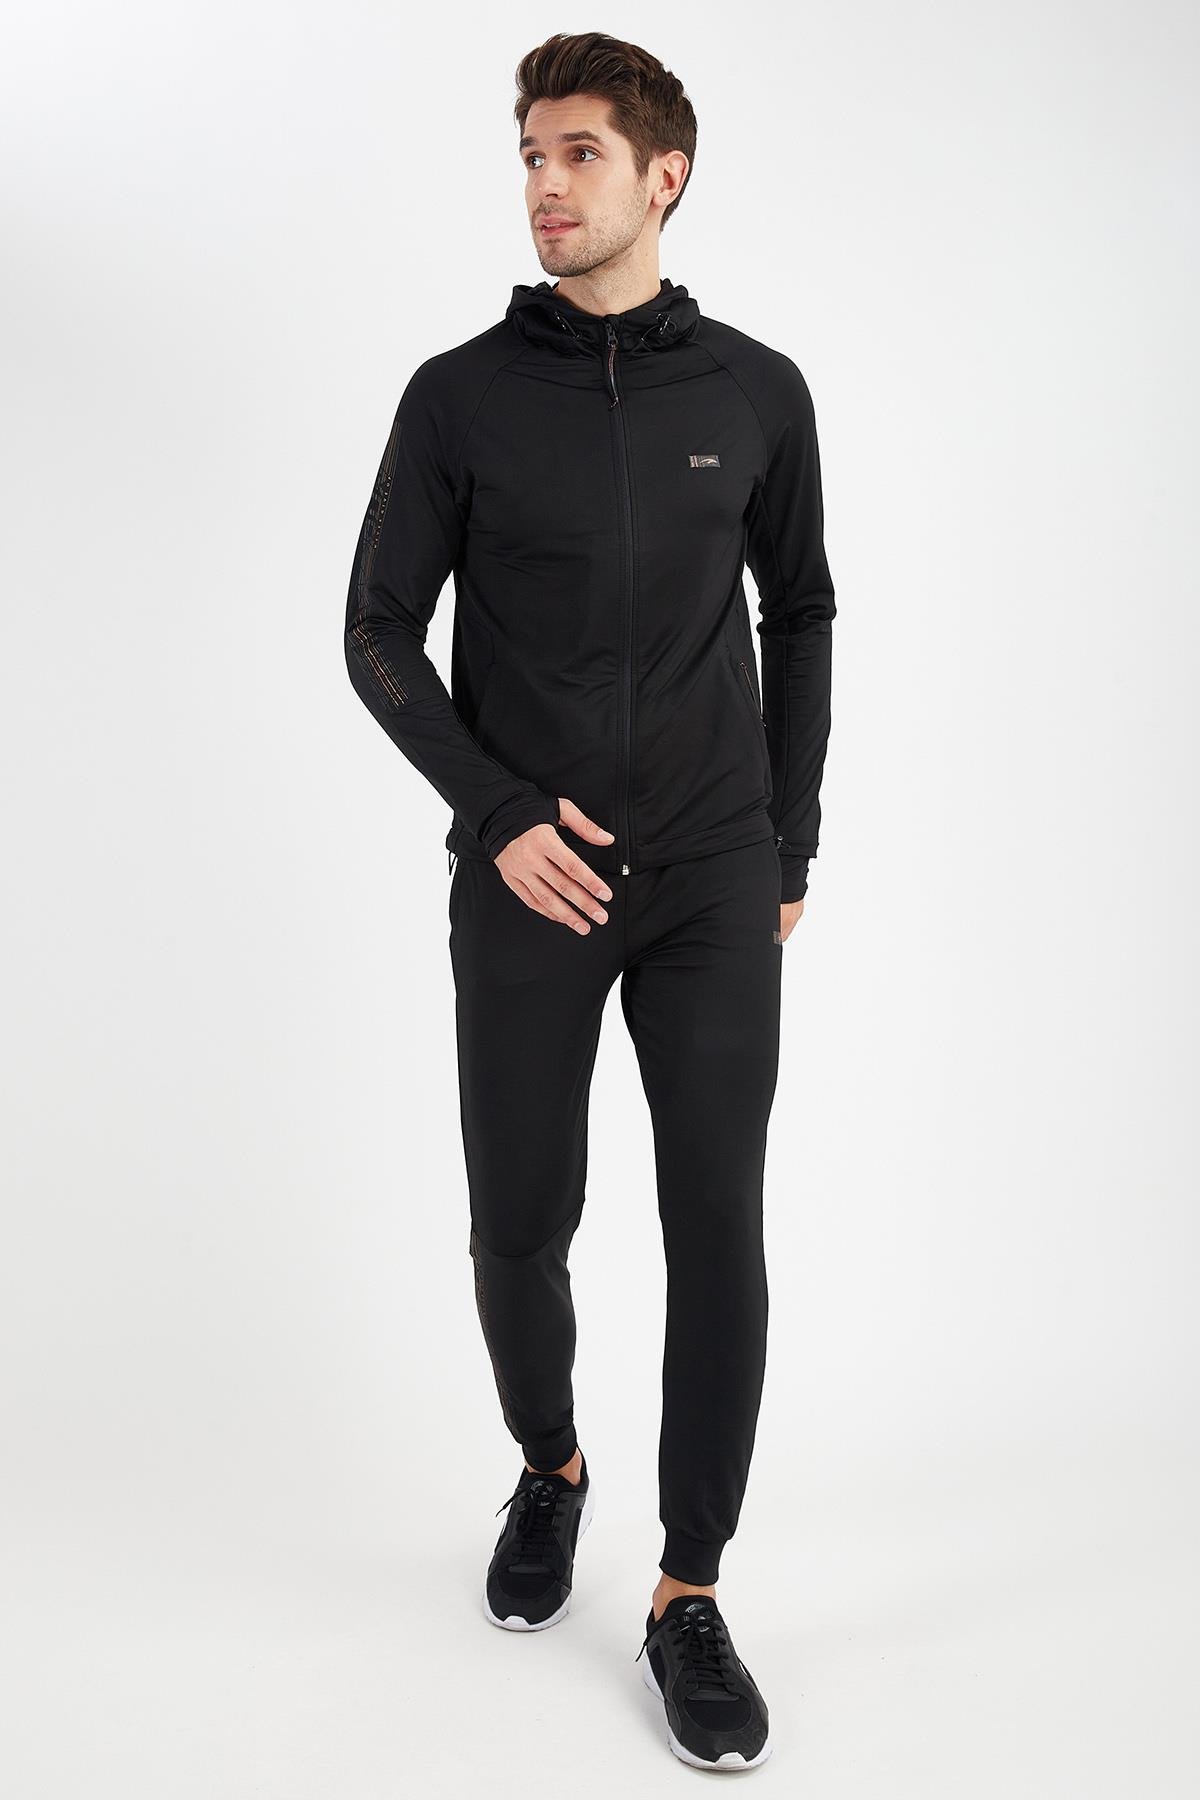 Maraton Active Regular Erkek Koşu Siyah-Turuncu Eşofman Altı 18391 -  Maraton Sportswear